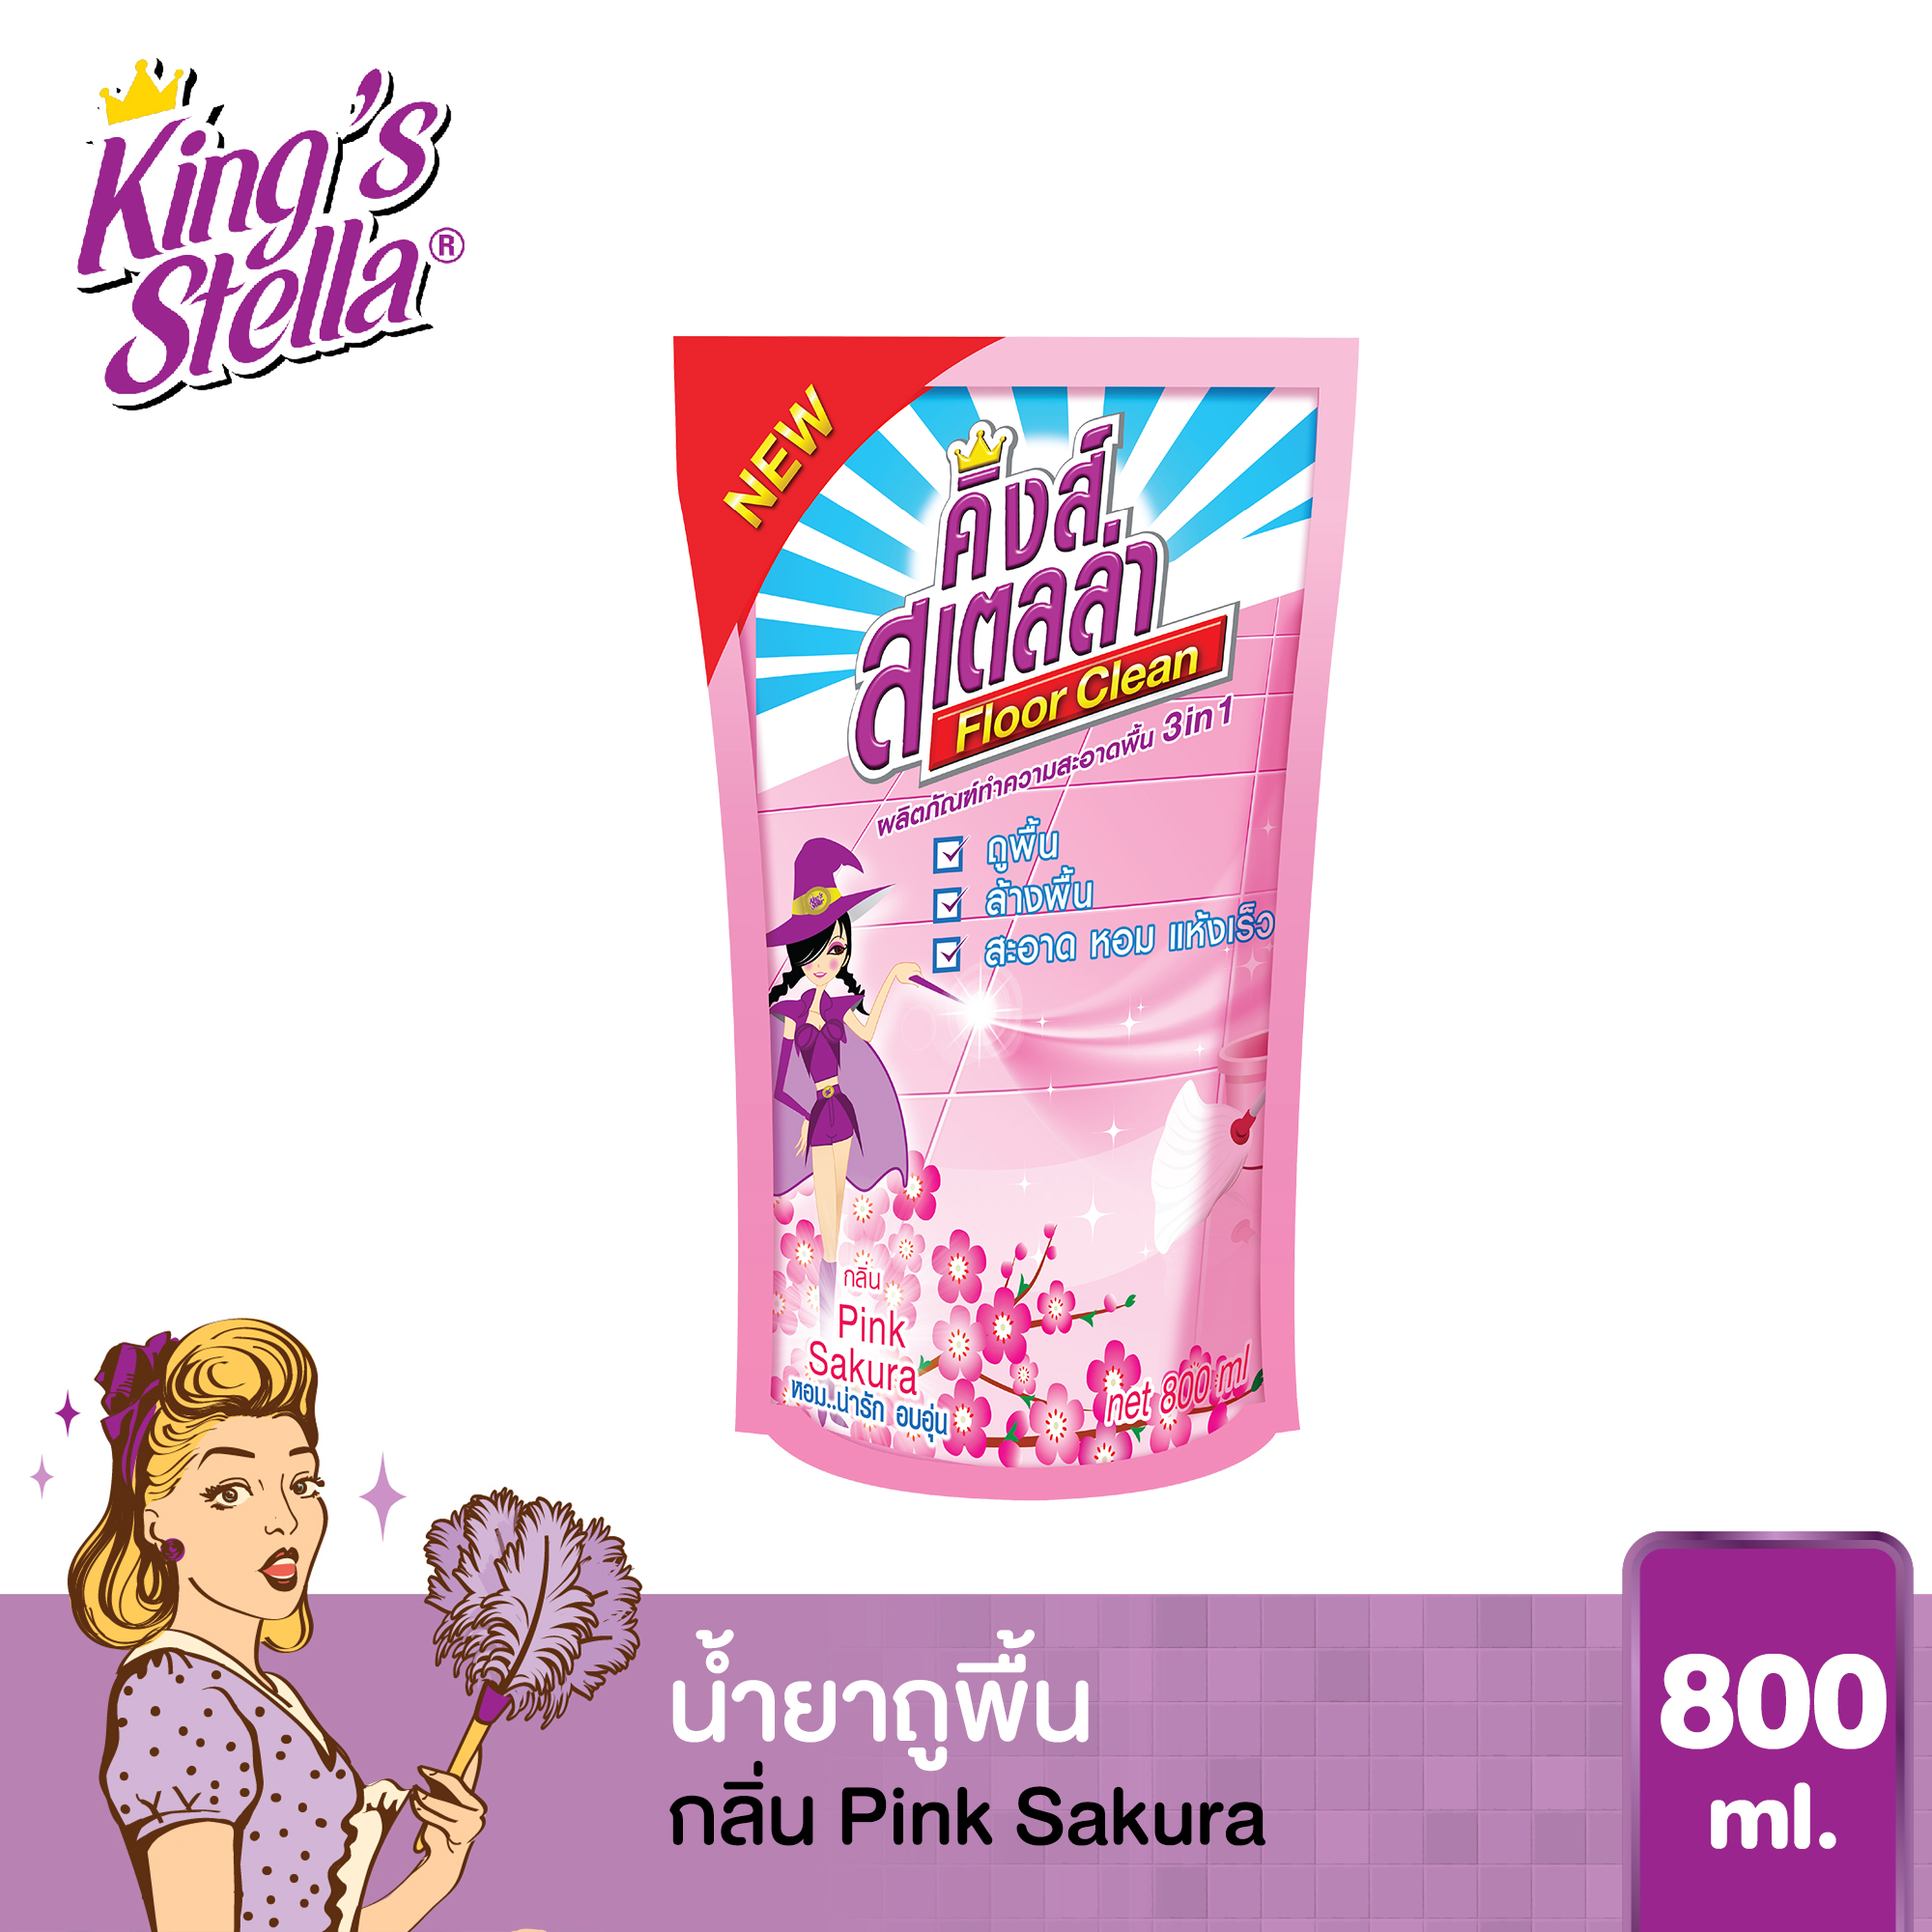 น้ำยาถูพื้น ขจัดกลิ่นอับ กลิ่นอันไม่พึงประสงค์ได้ในทันที King's Stella Floor Clean 800ml. กลิ่น Pink Sakura